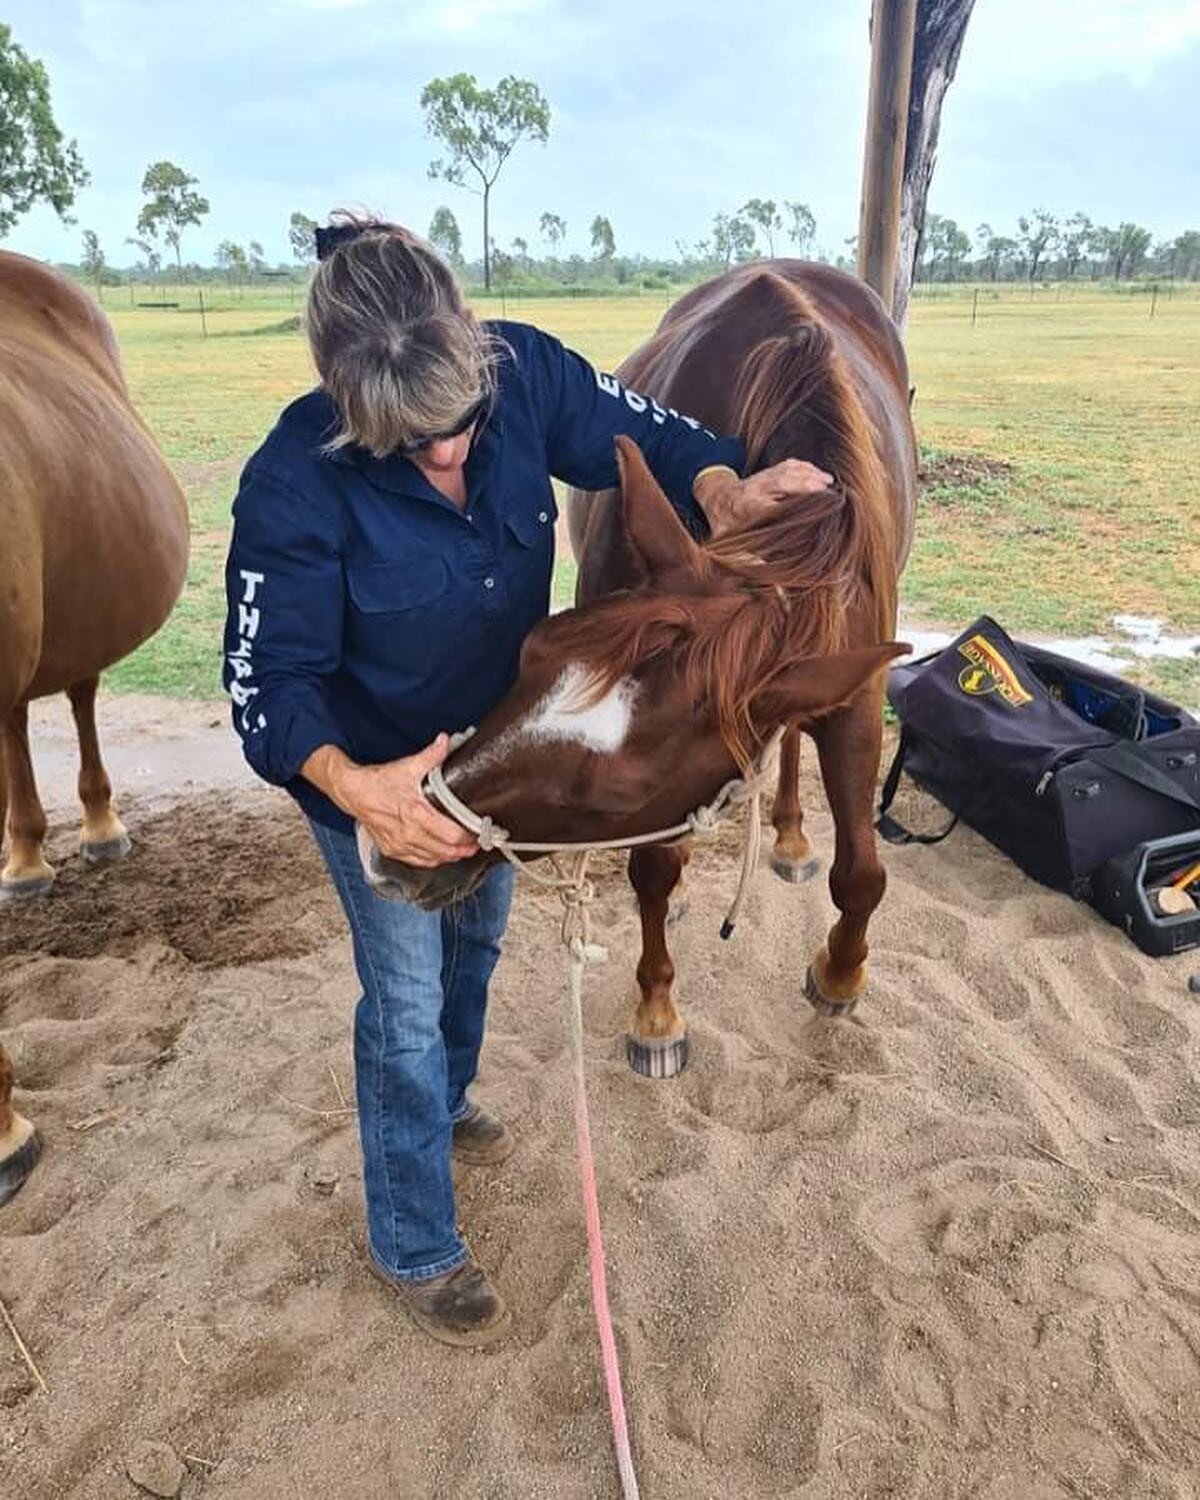 Finding a bit of relief! 💕🐴#alischiro #horsesaustralia #horselove #equine